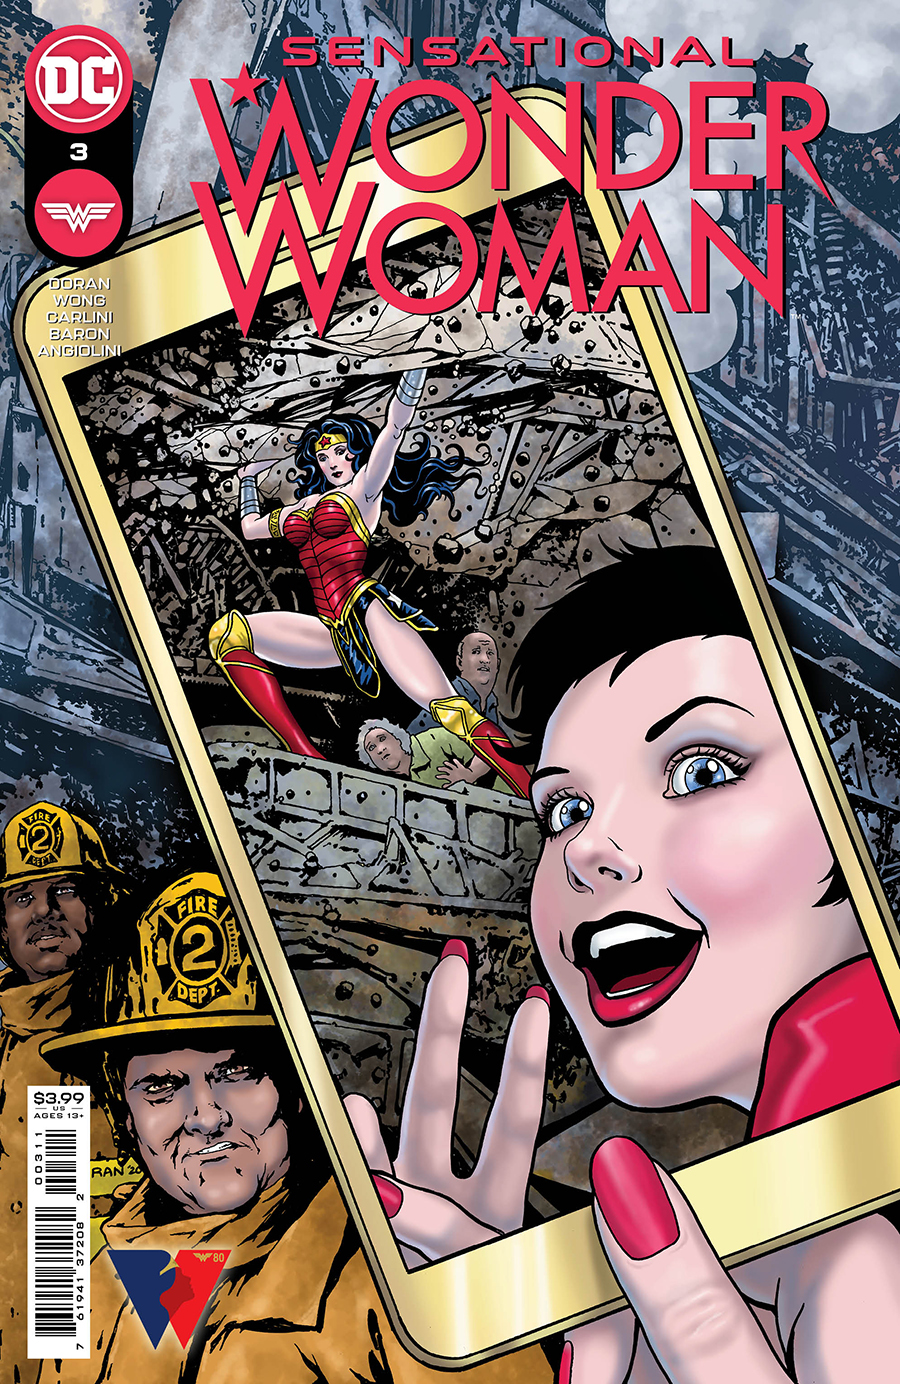 Sensational Wonder Woman #3 Cover A Colleen Doran